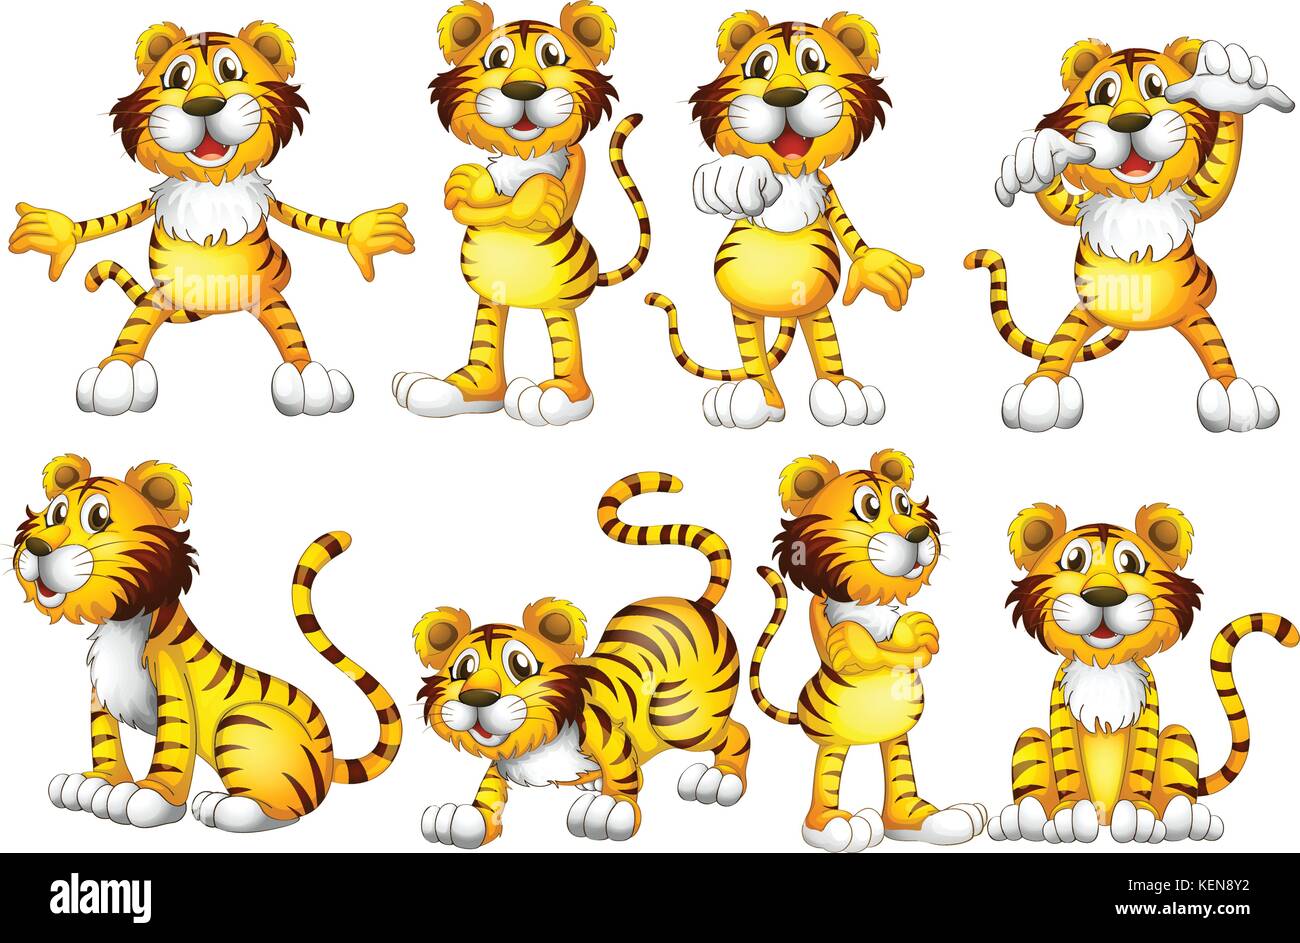 ilustracion-de-un-grupo-de-tigres-ken8y2.jpg